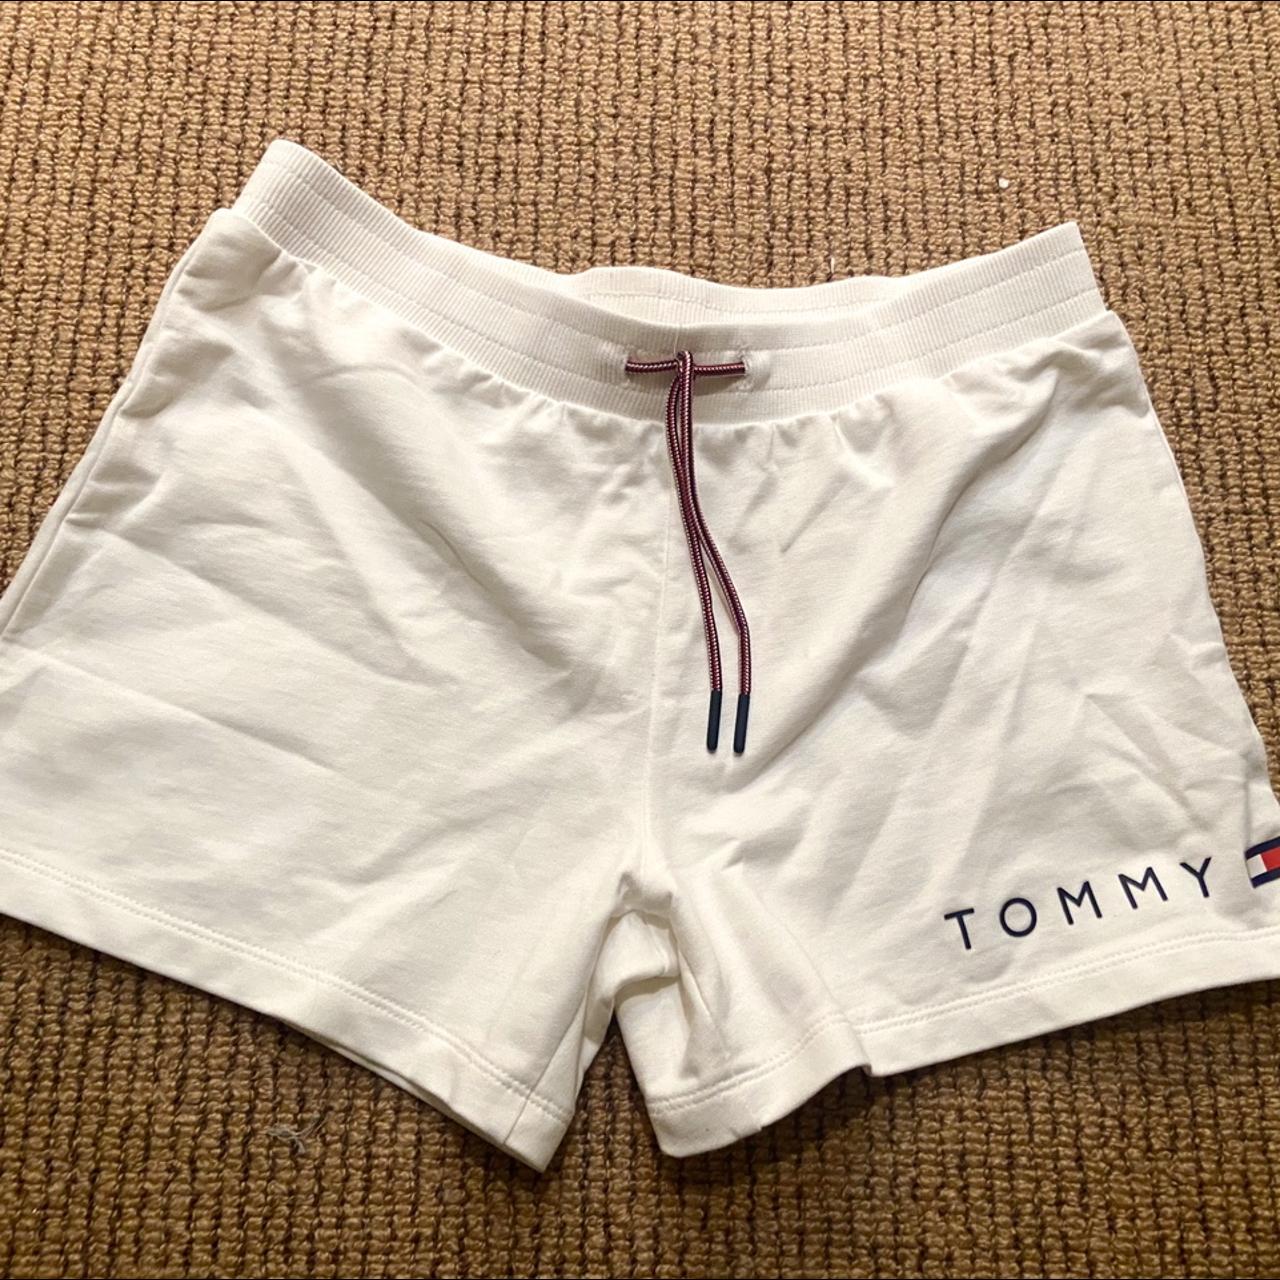 kids XL tommy hilfiger comfy shorts. never worn &... - Depop